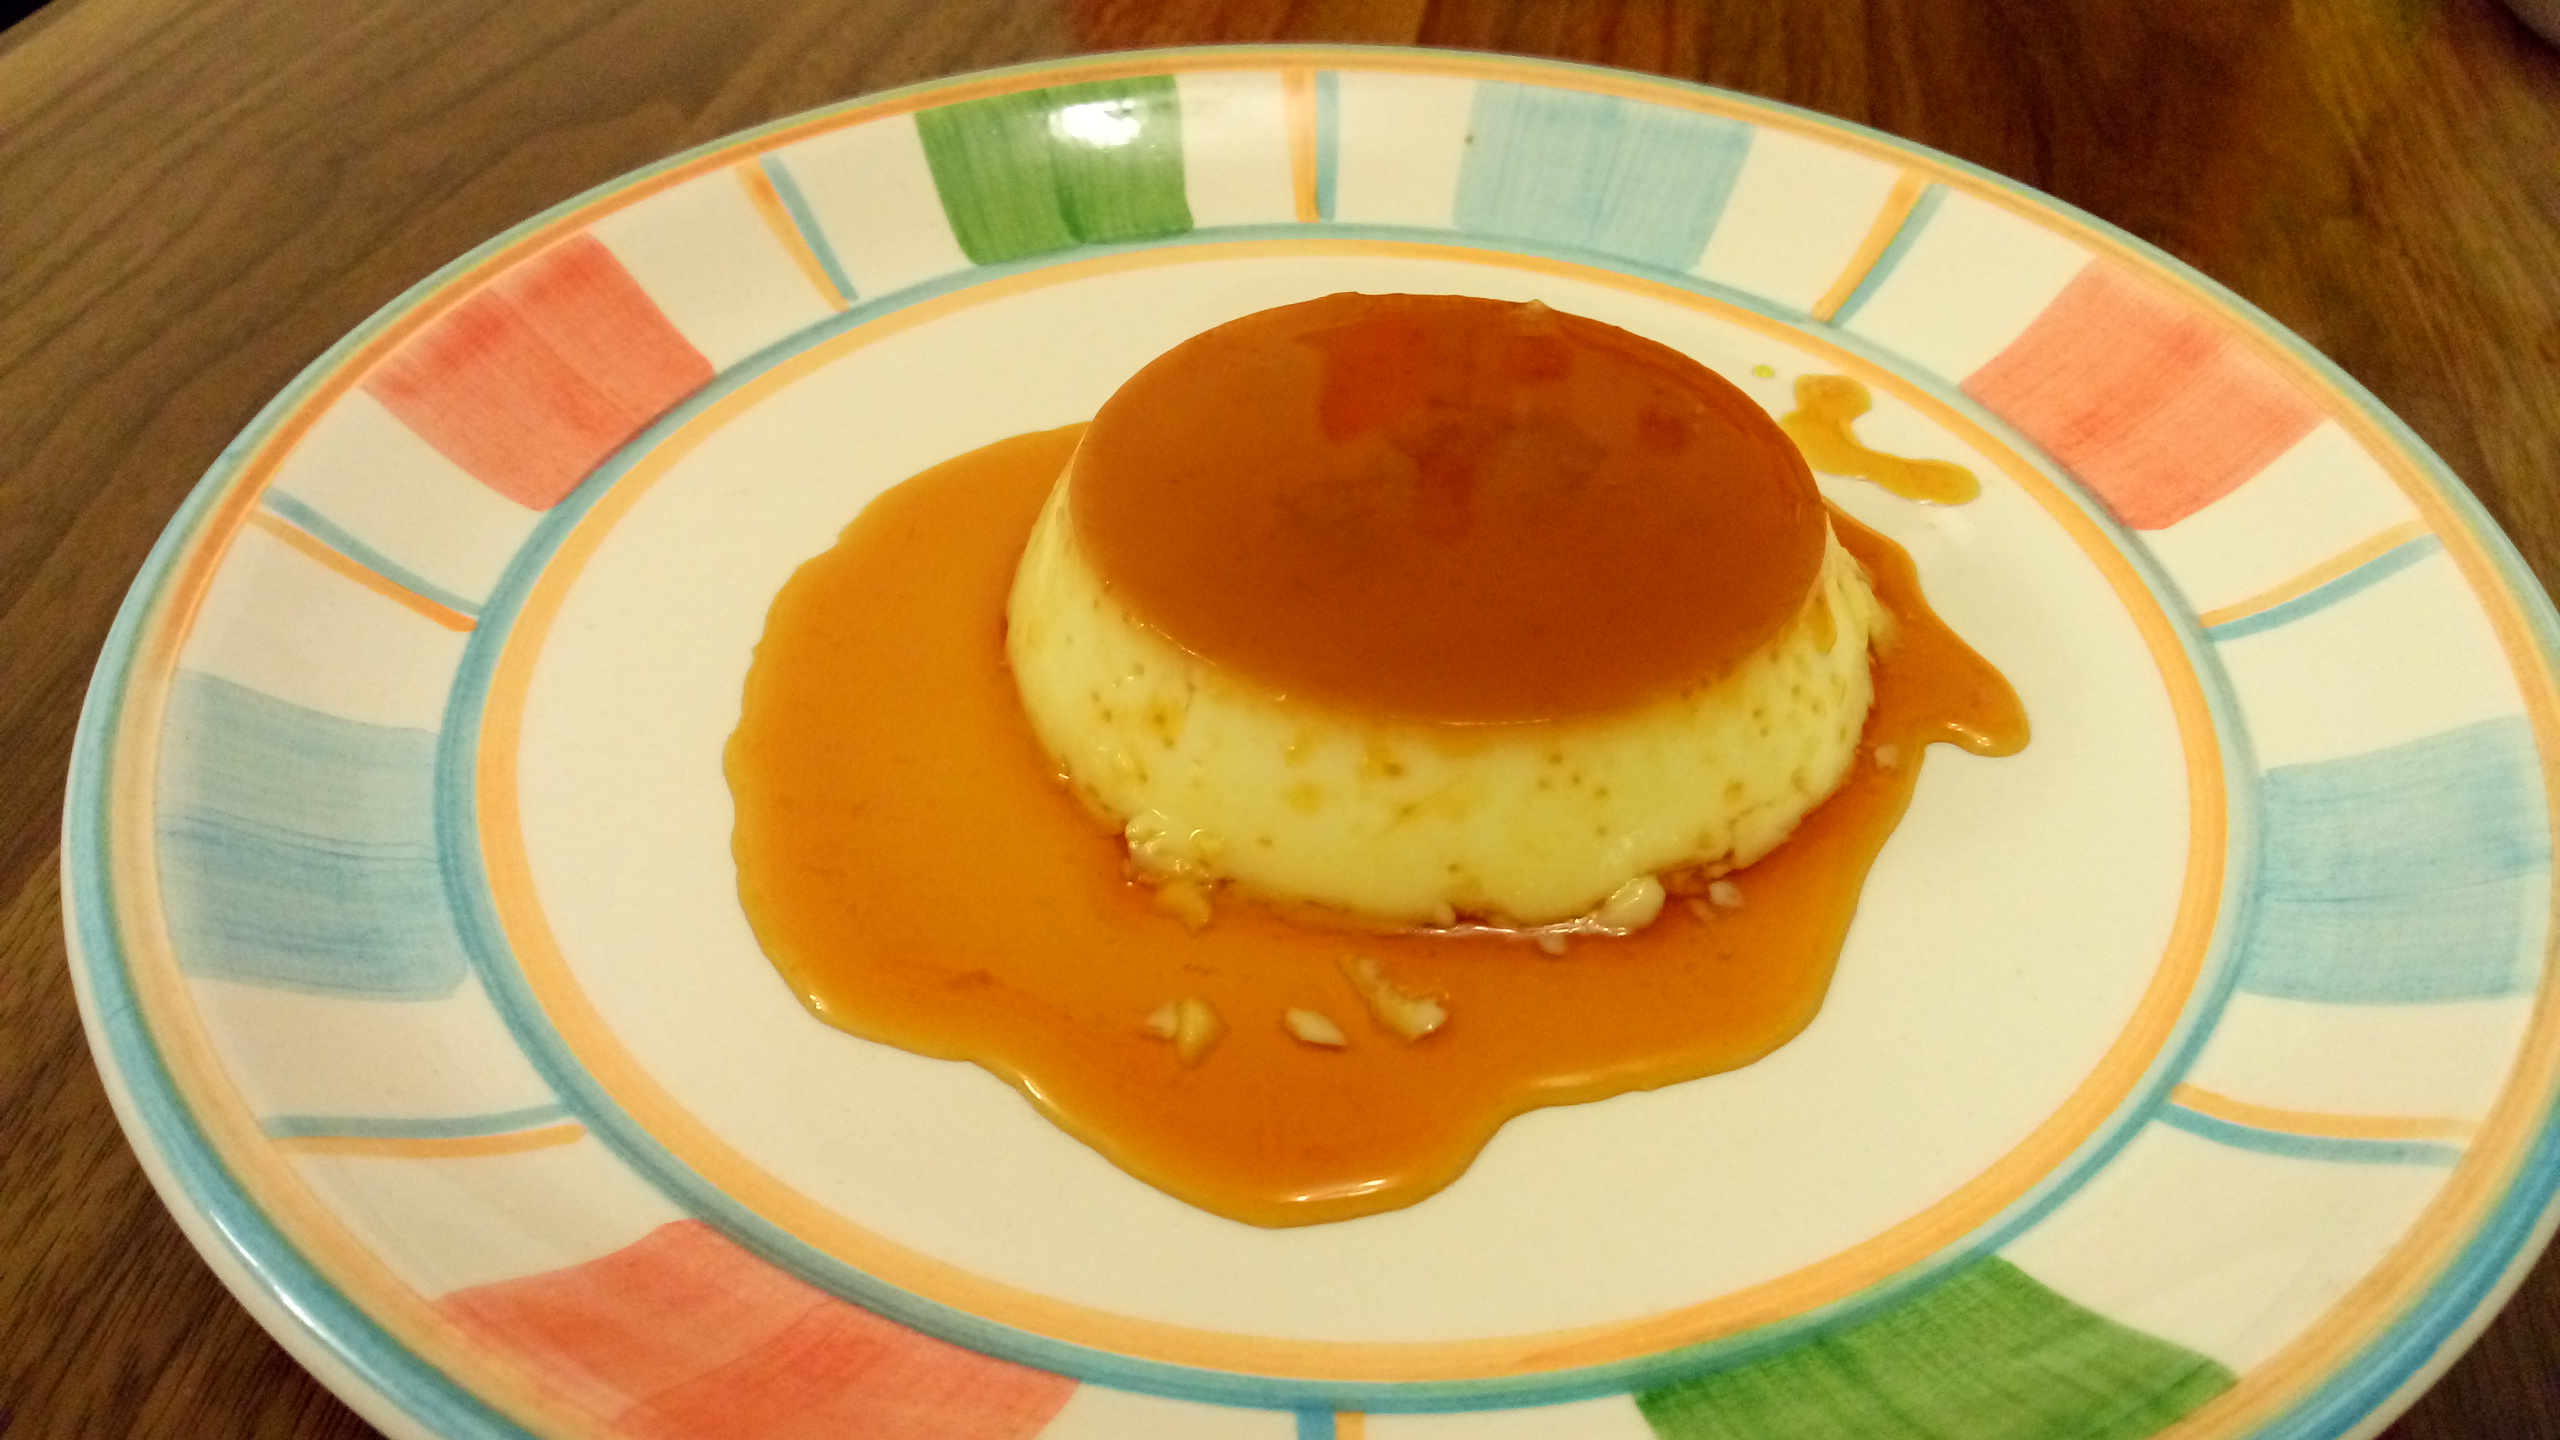 焦糖布丁 caramel pudding食譜、做法 | Sabrina Ye的Cook1Cook食譜分享